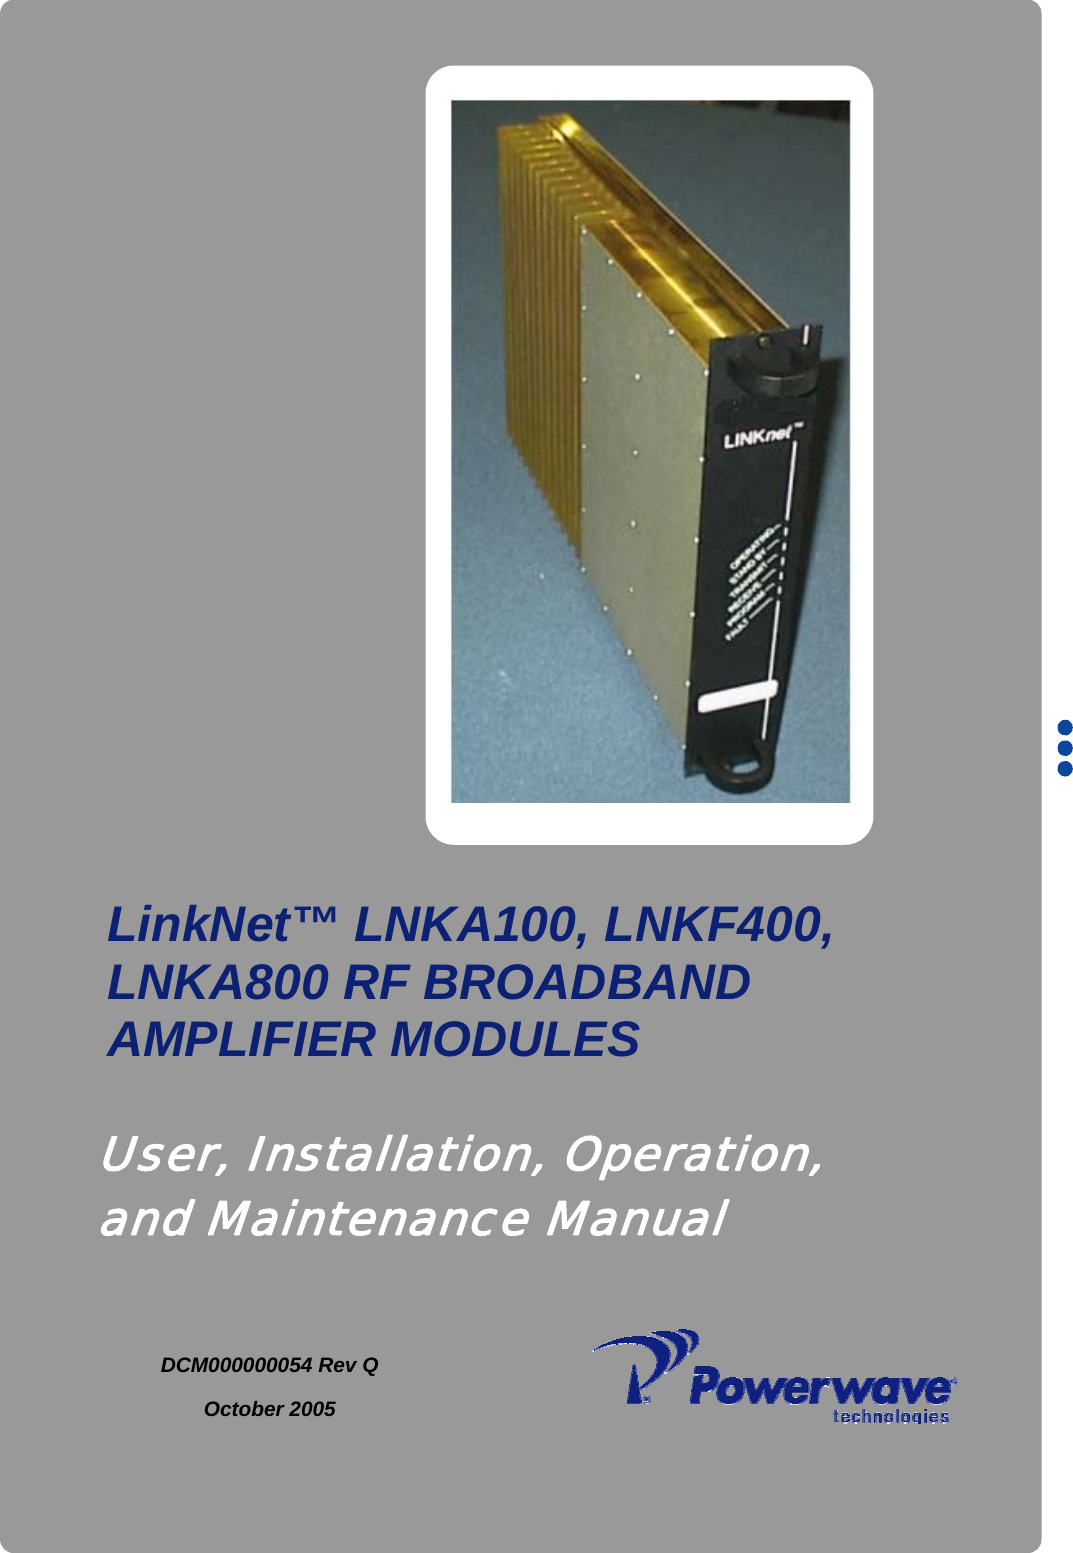           DCM000000054 Rev Q October 2005     LinkNet™ LNKA100, LNKF400,  LNKA800 RF BROADBAND AMPLIFIER MODULES User, Installation, Operation, and Maintenance Manual 